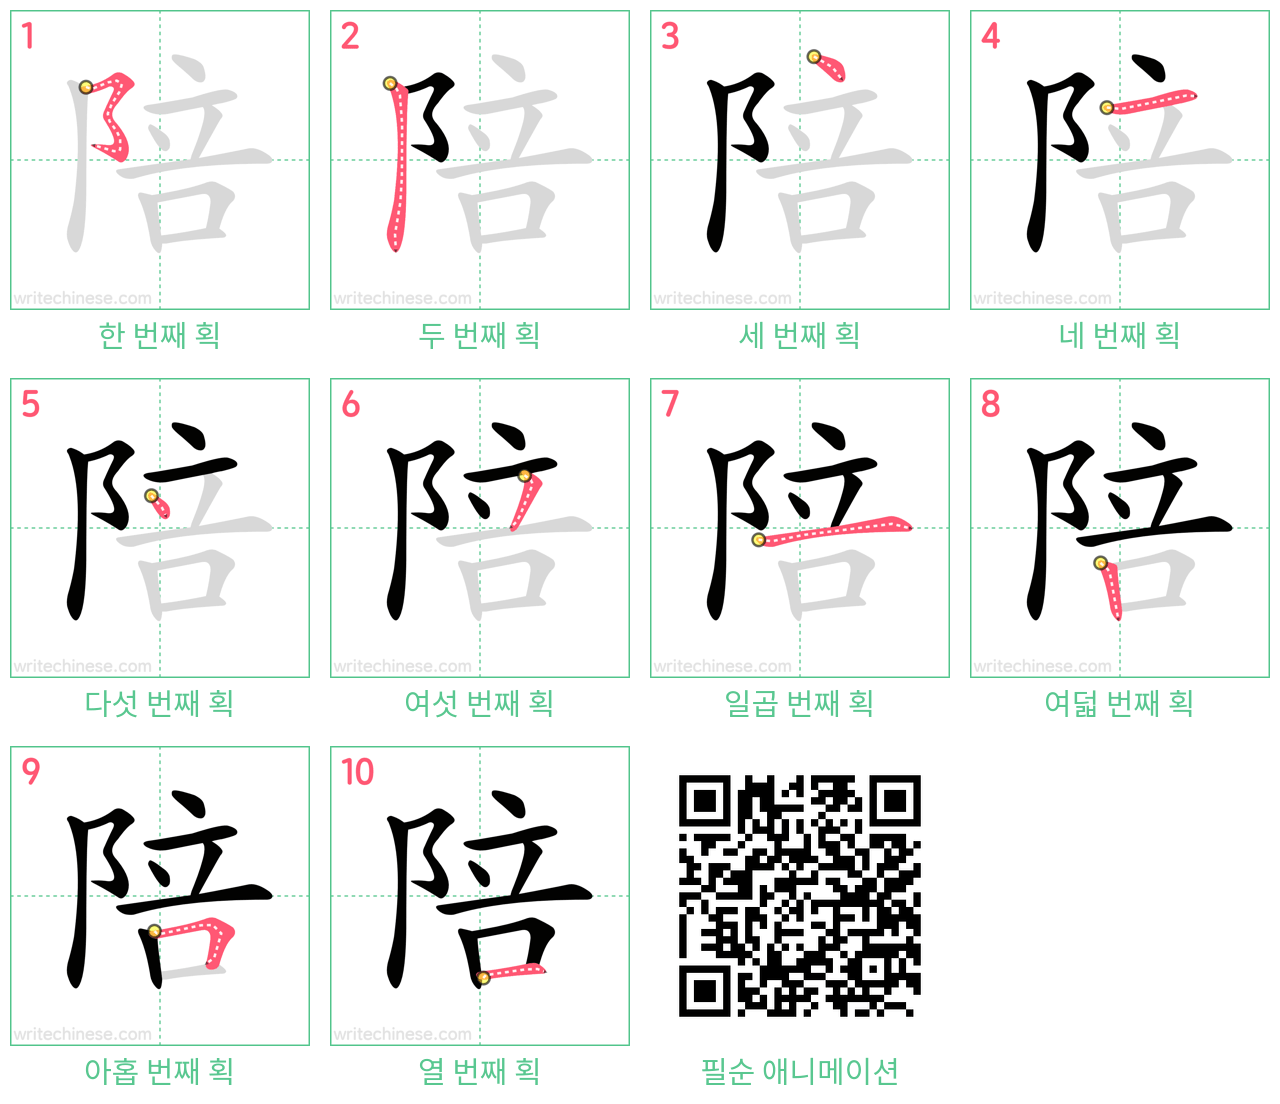 陪 step-by-step stroke order diagrams